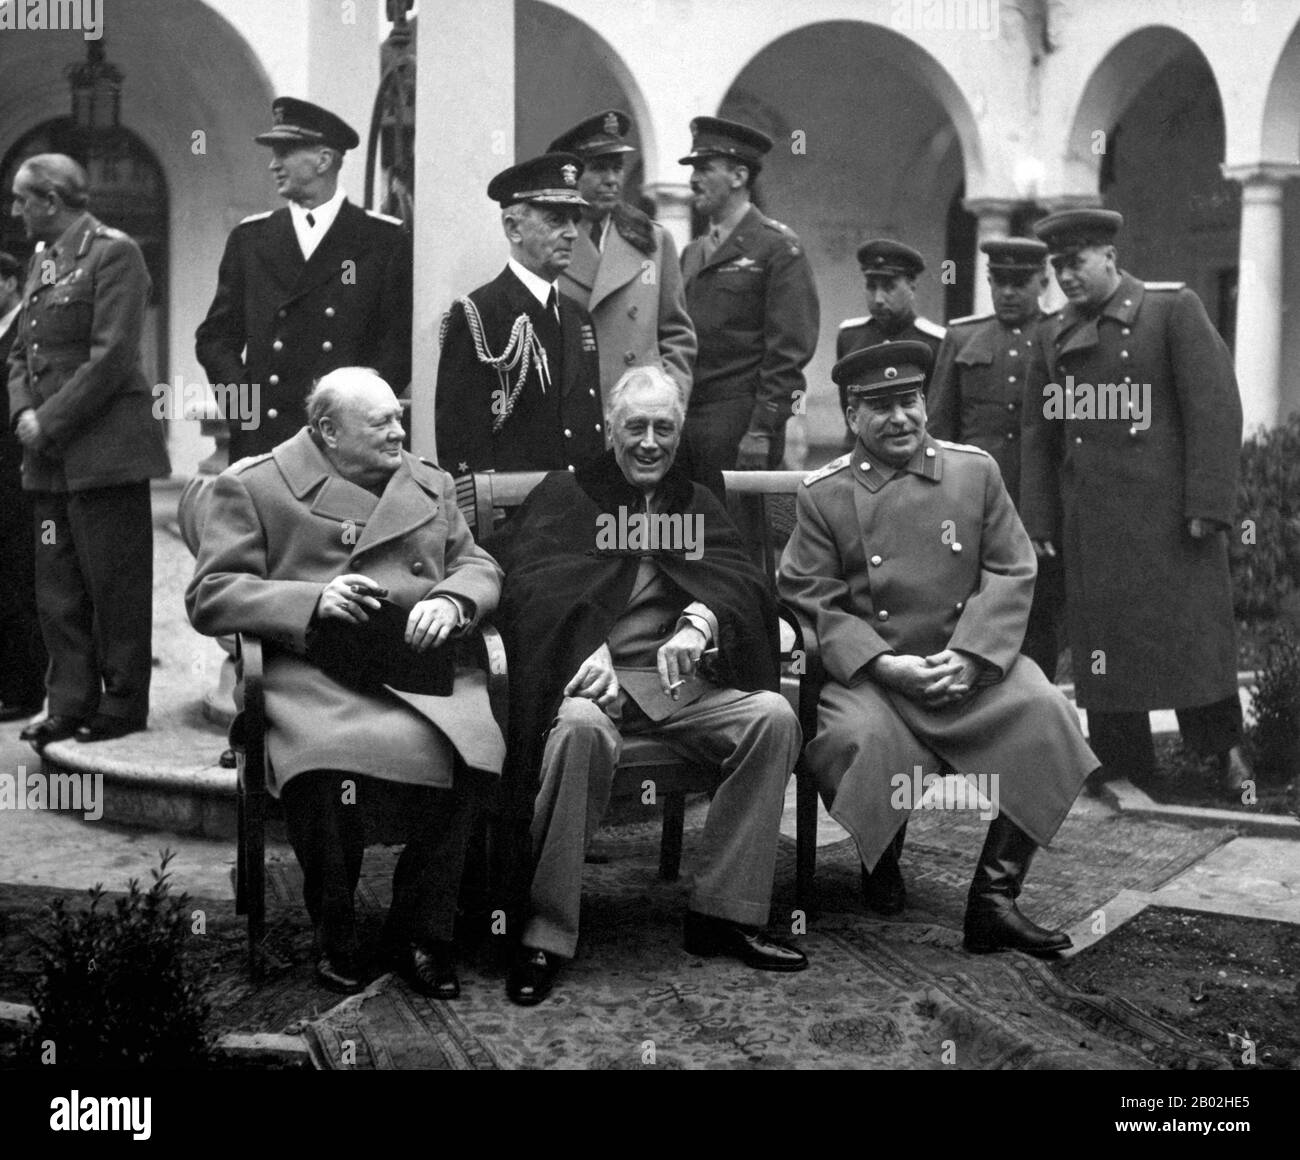 La Conferencia de Yalta, a veces llamada la Conferencia de Crimea y codenamada la Conferencia Argonauta, celebrada del 4 al 11 de febrero de 1945, fue la reunión de Jefes de Gobierno de los Estados Unidos, el Reino Unido y la Unión Soviética, representada por el Presidente Franklin D. Roosevelt, El primer Ministro Winston Churchill y el primer Ministro Joseph Stalin, respectivamente, con el fin de discutir la reorganización de Europa de la posguerra. La conferencia se celebró en el Palacio Livadia, cerca de Yalta, en Crimea. La reunión tenía por objeto principalmente examinar el restablecimiento de las naciones de Europa desgarrada por la guerra. W Foto de stock